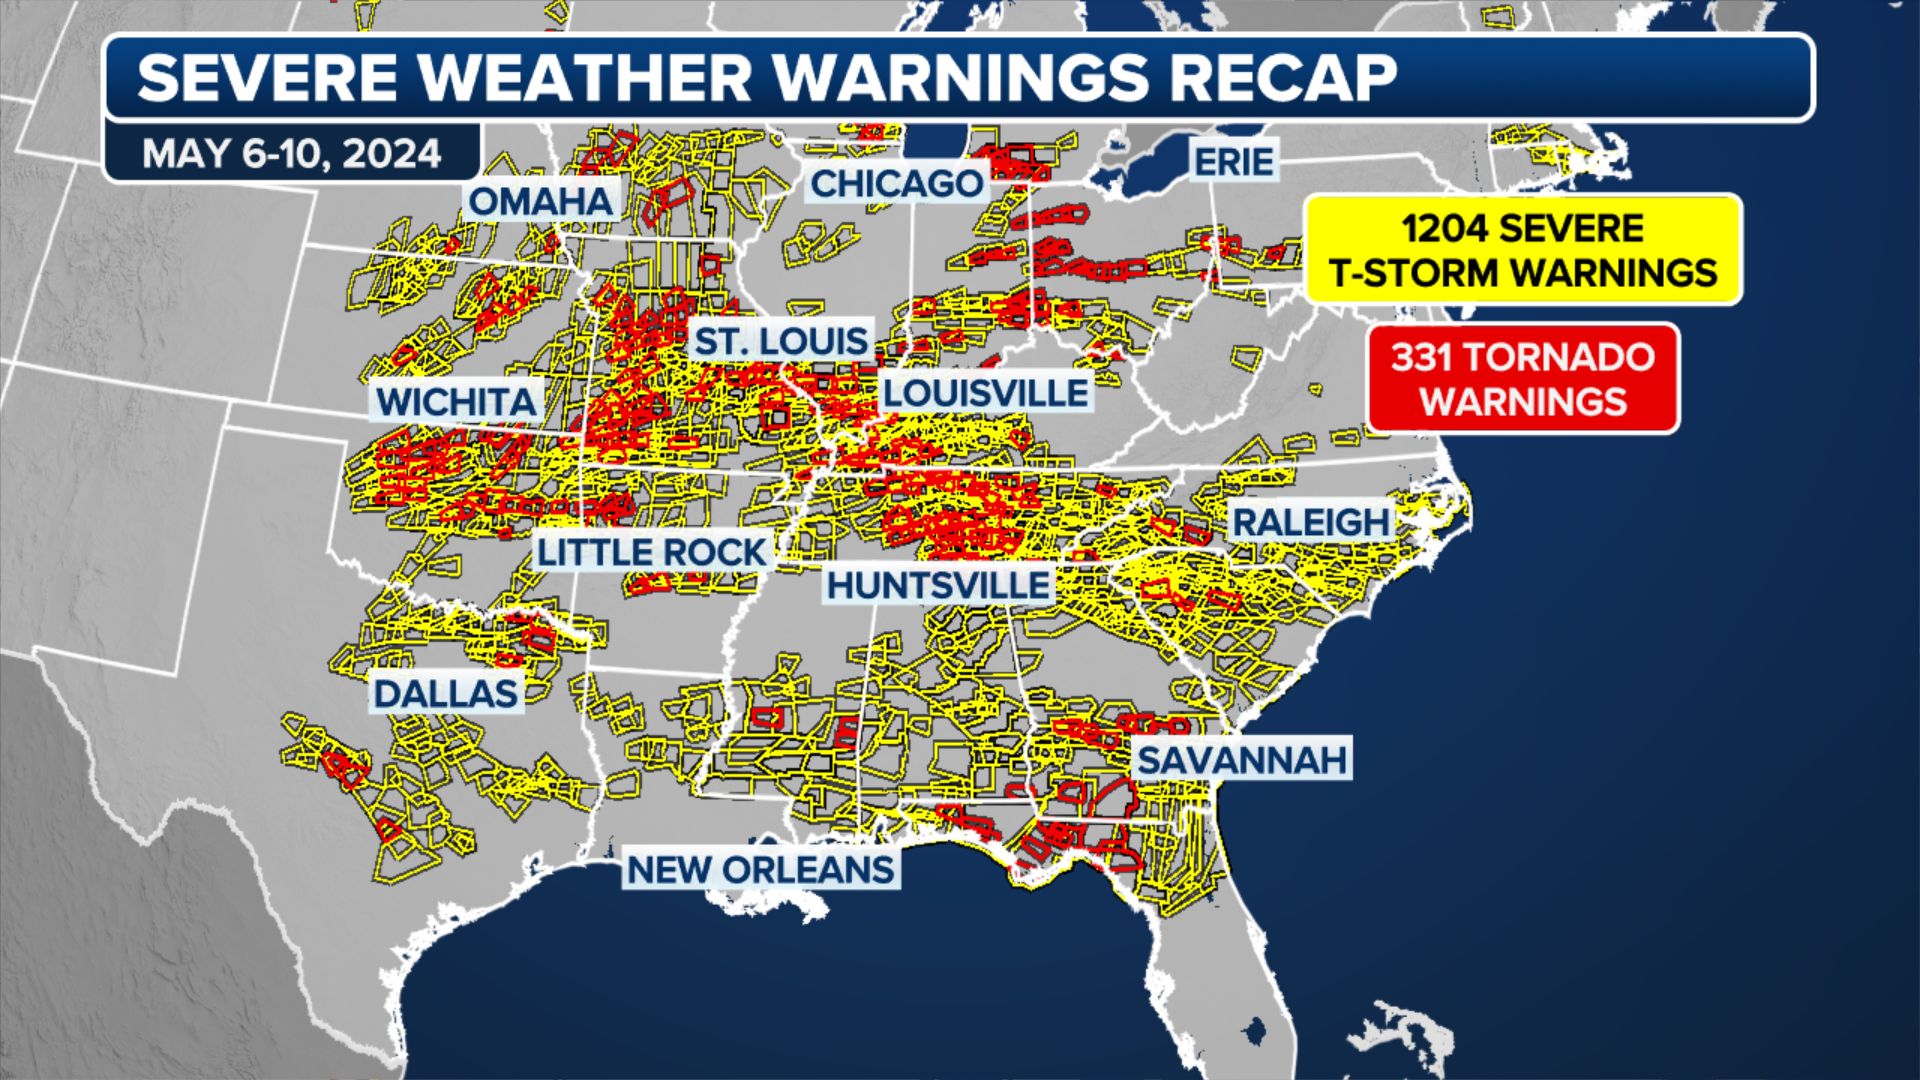 A look back: America endures 2 weeks under severe weather siege of over 600 Tornado Warnings